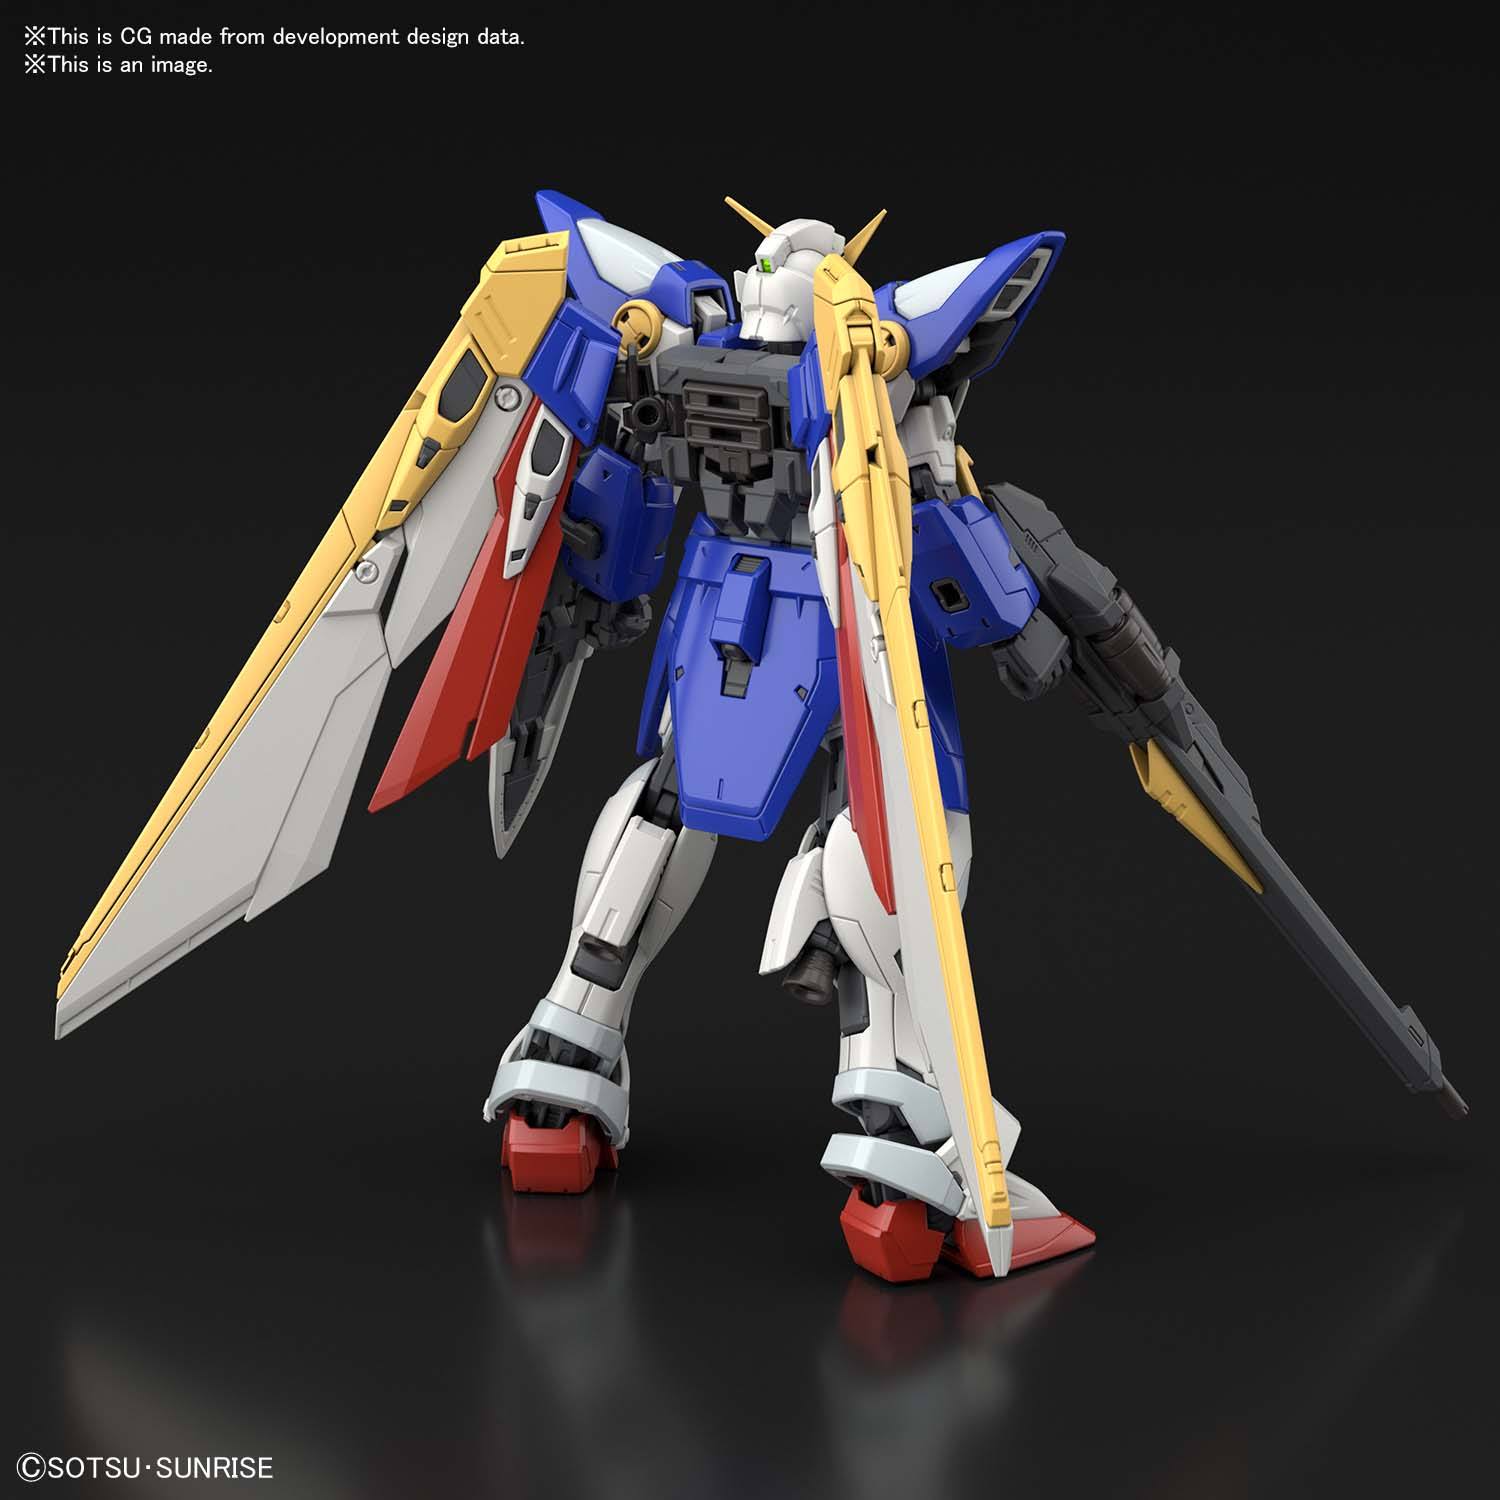 RG Wing Gundam 1/144